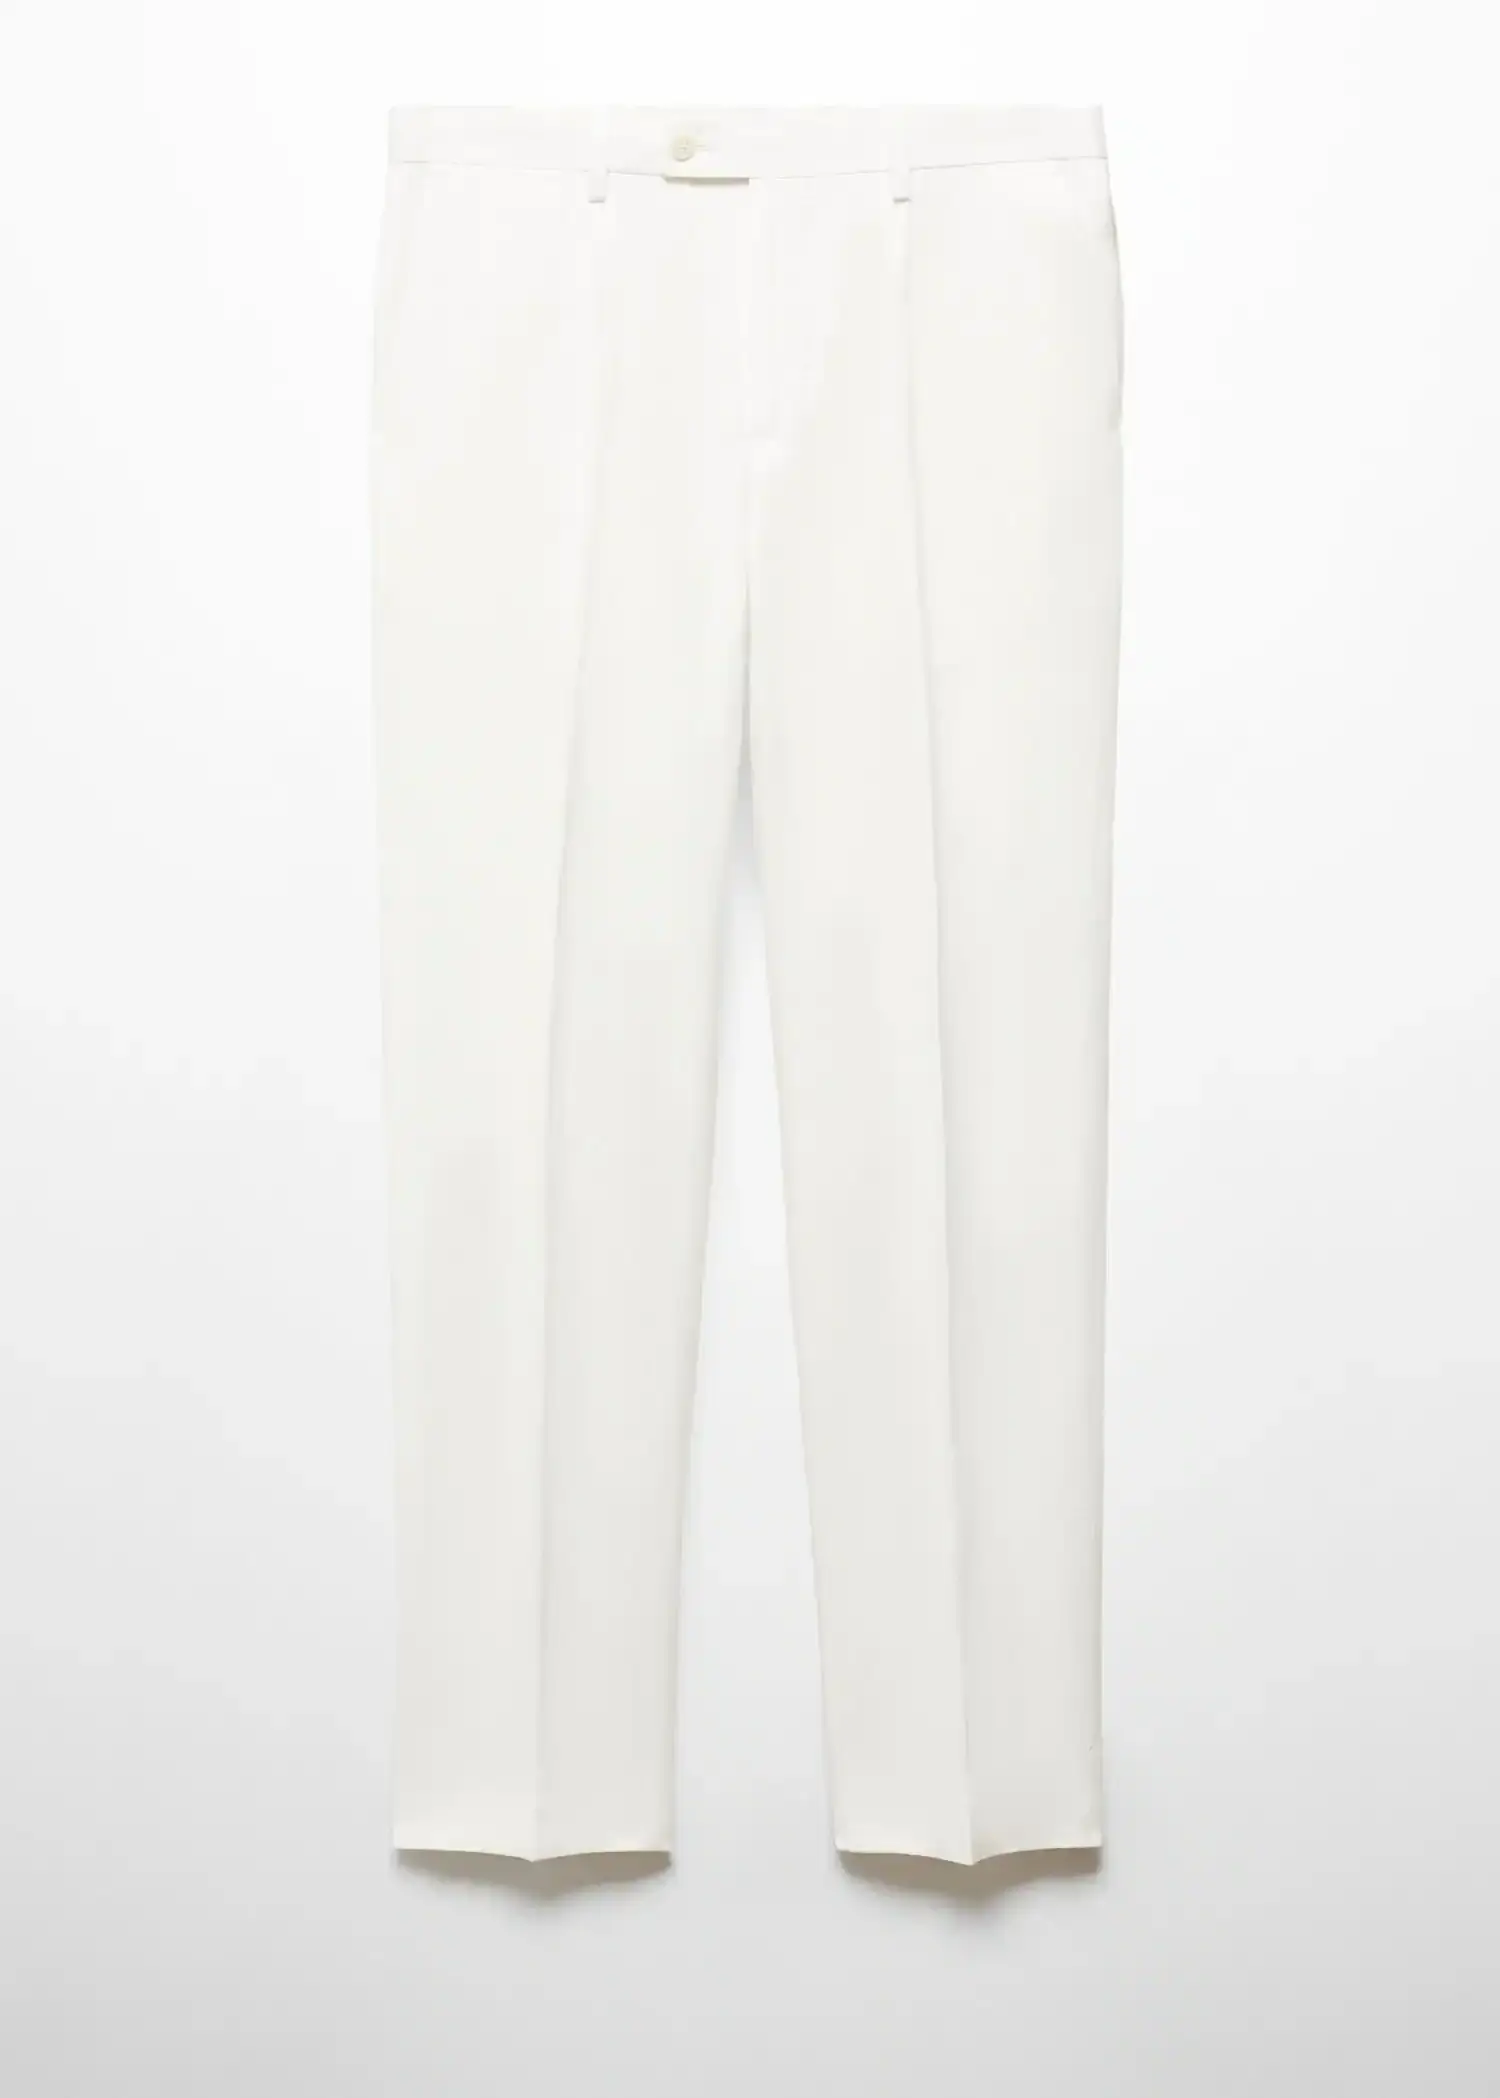 Mango Pantalón traje slim fit algodón y lino. 1